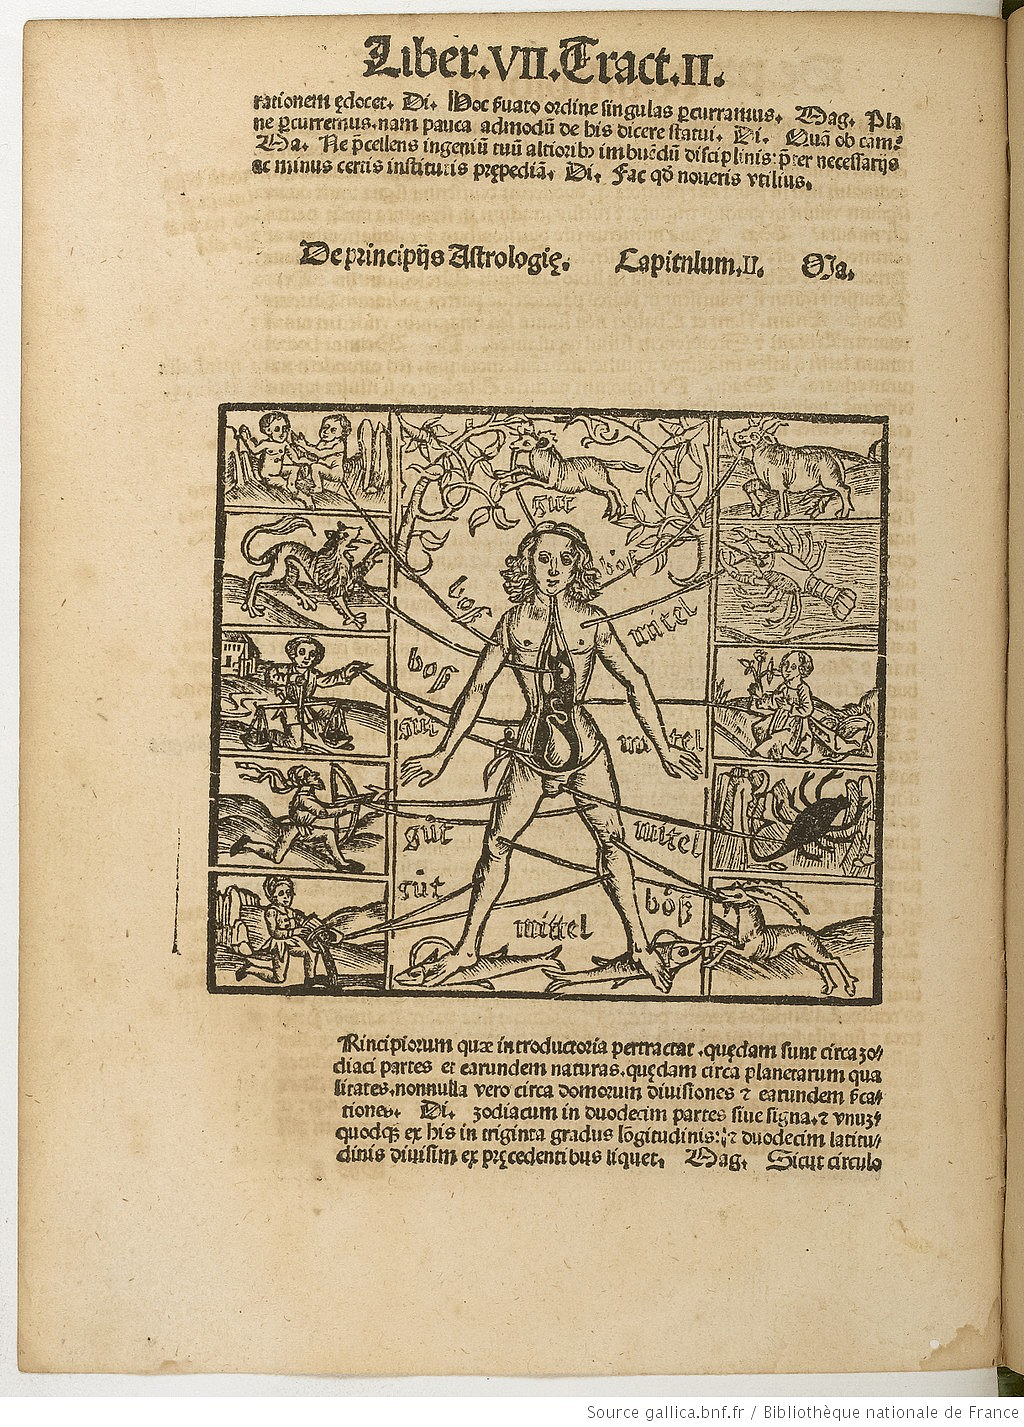 Image de l'homme zodiacal dans le manuscrit La Margarita philosophica